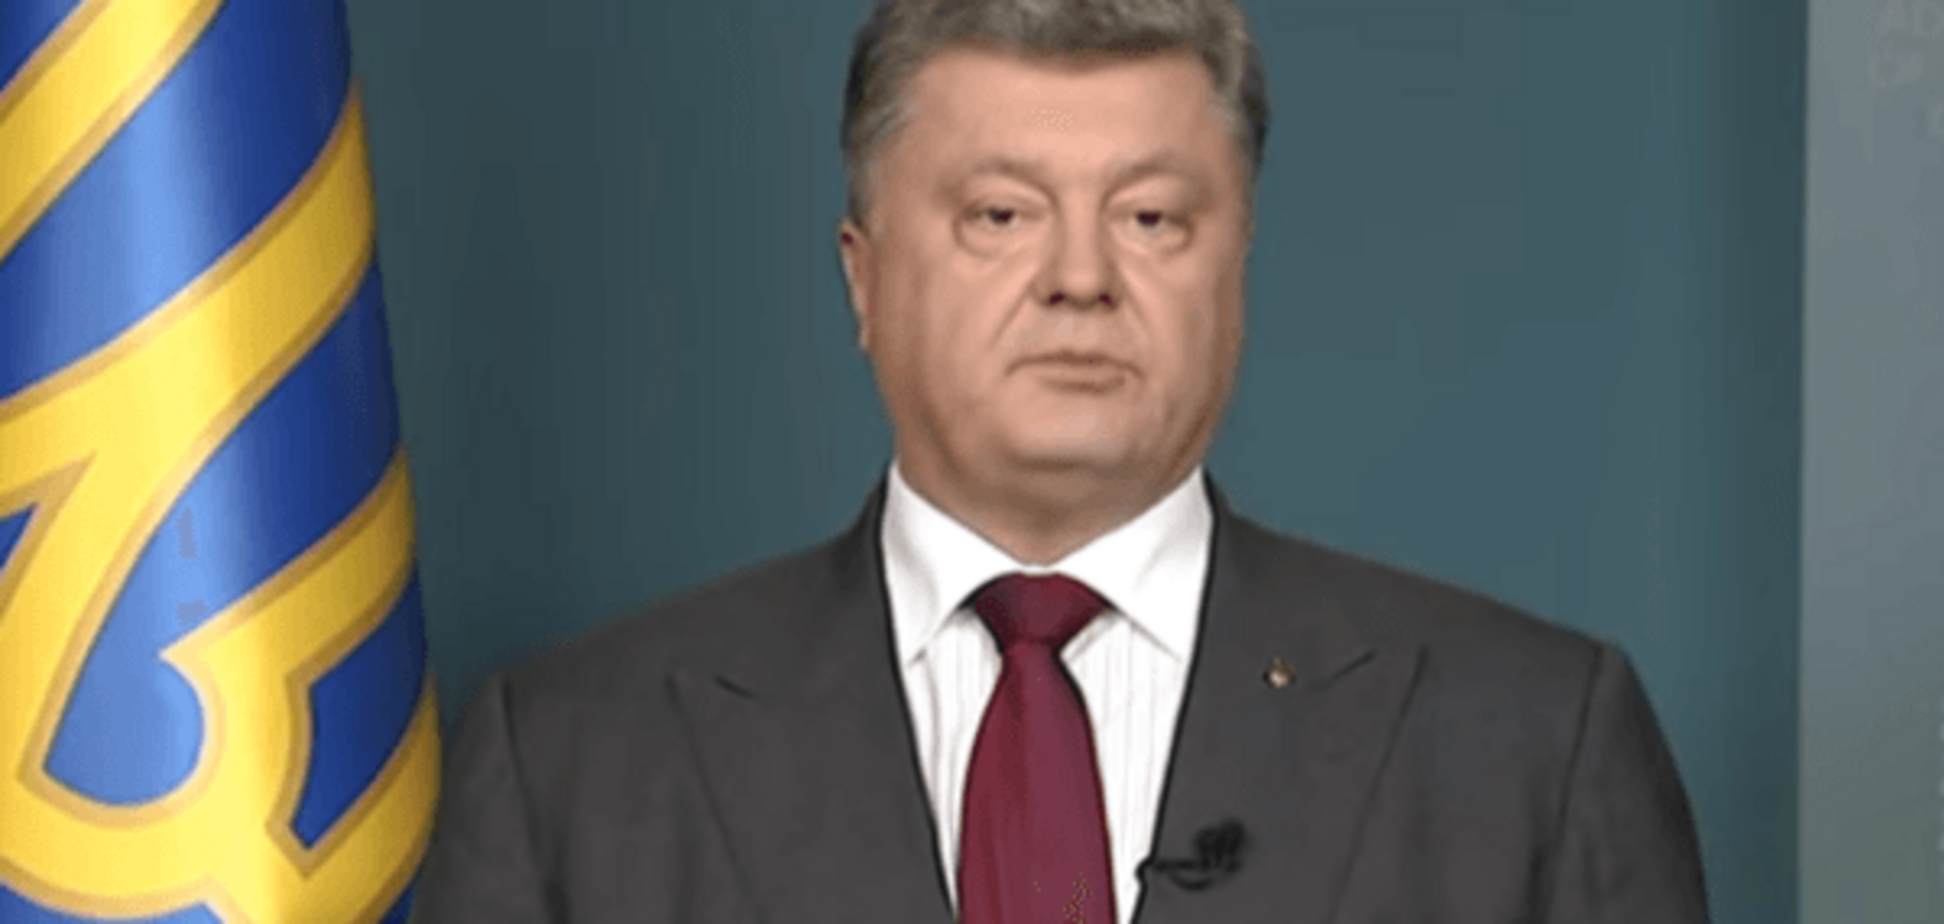 Порошенко обратился к украинцам по поводу местных выборов: видеофакт